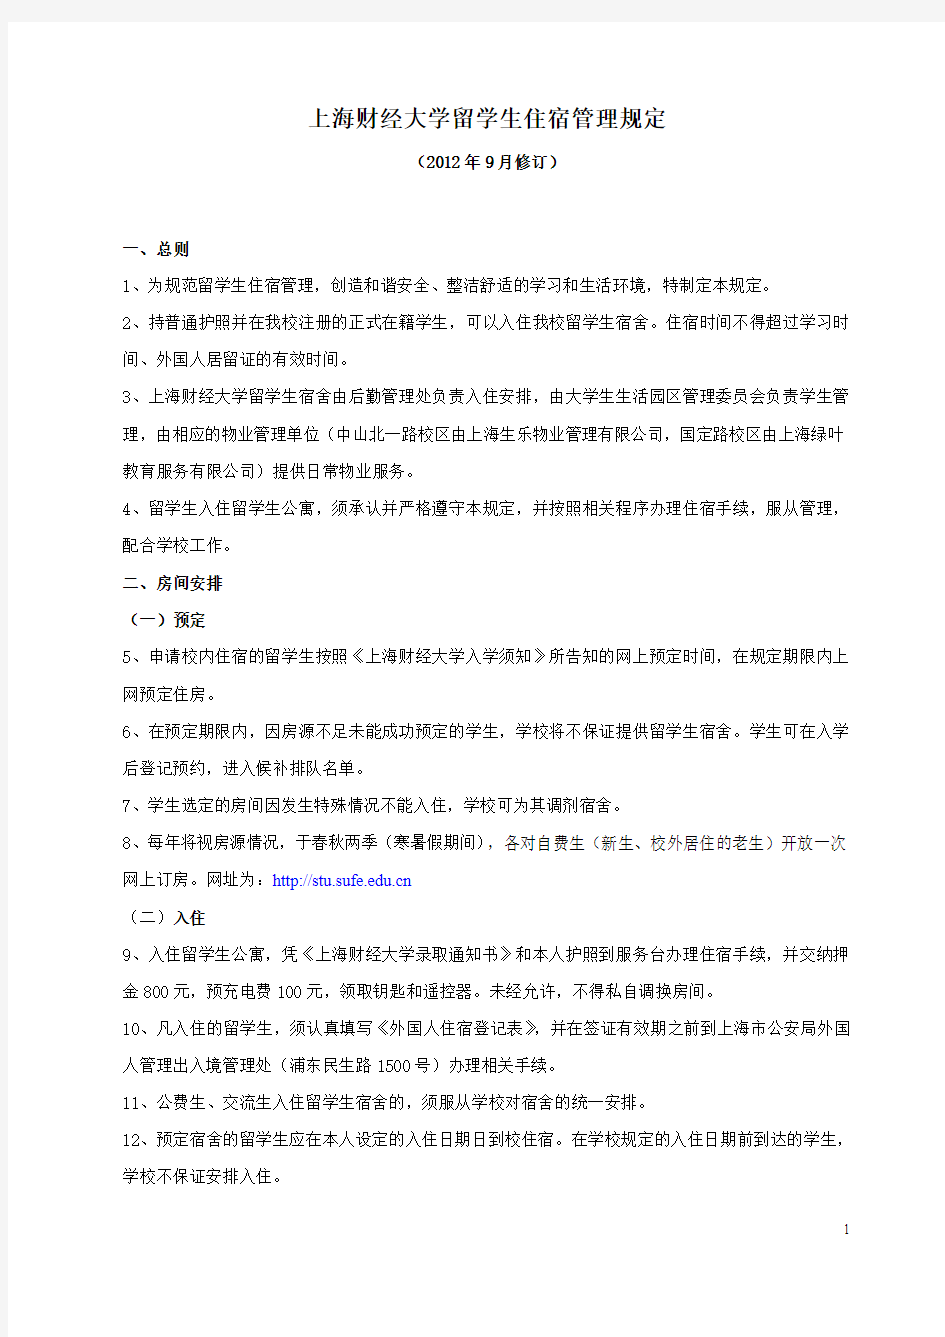 上海财经大学留学生住宿管理规定(试行)